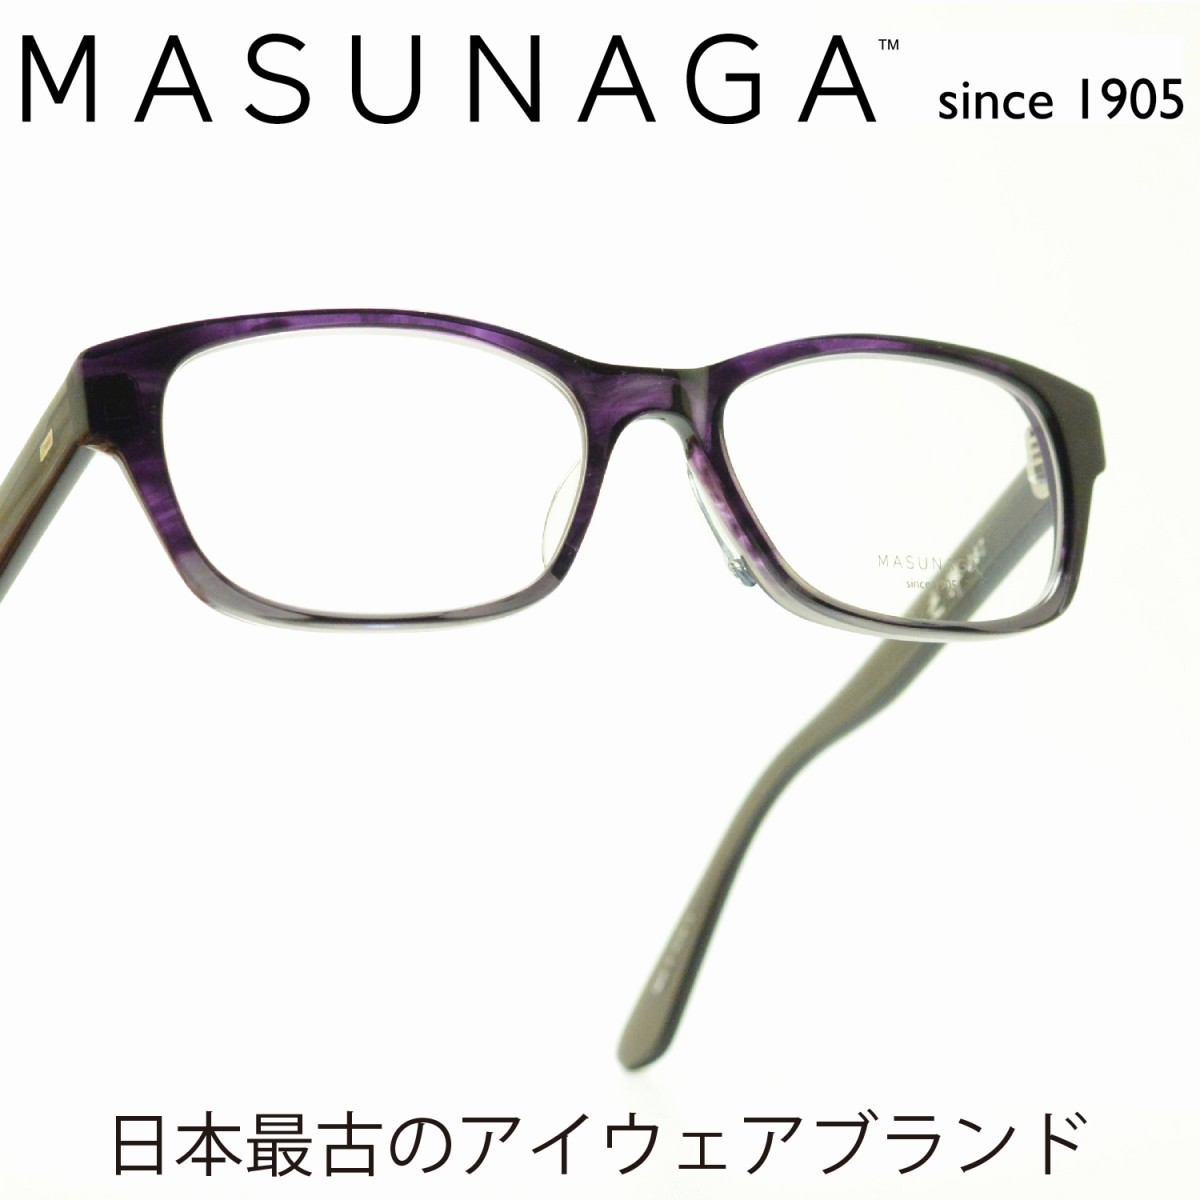 楽天市場 増永眼鏡 Masunaga 光輝 067 Col 26 Pu Gryメガネ 眼鏡 めがね メンズ レディース おしゃれ ブランド 人気 おすすめ フレーム 流行り 度付き レンズ デコリンメガネ